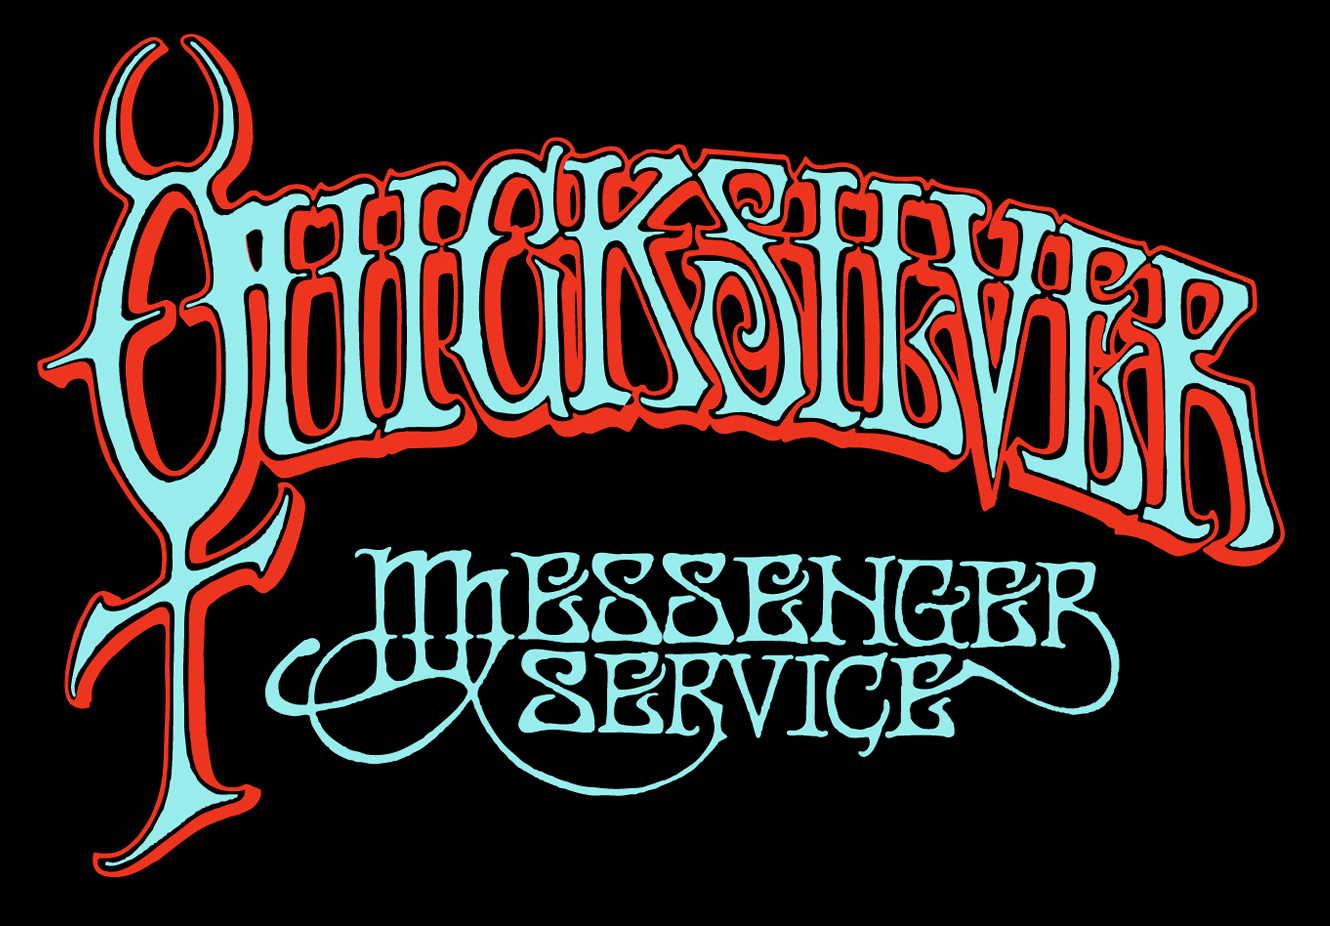 Quicksilver messenger service. Quicksilver Messenger service 1968. Comin' thru Quicksilver Messenger service. Quicksilver Messenger service - just for Love.